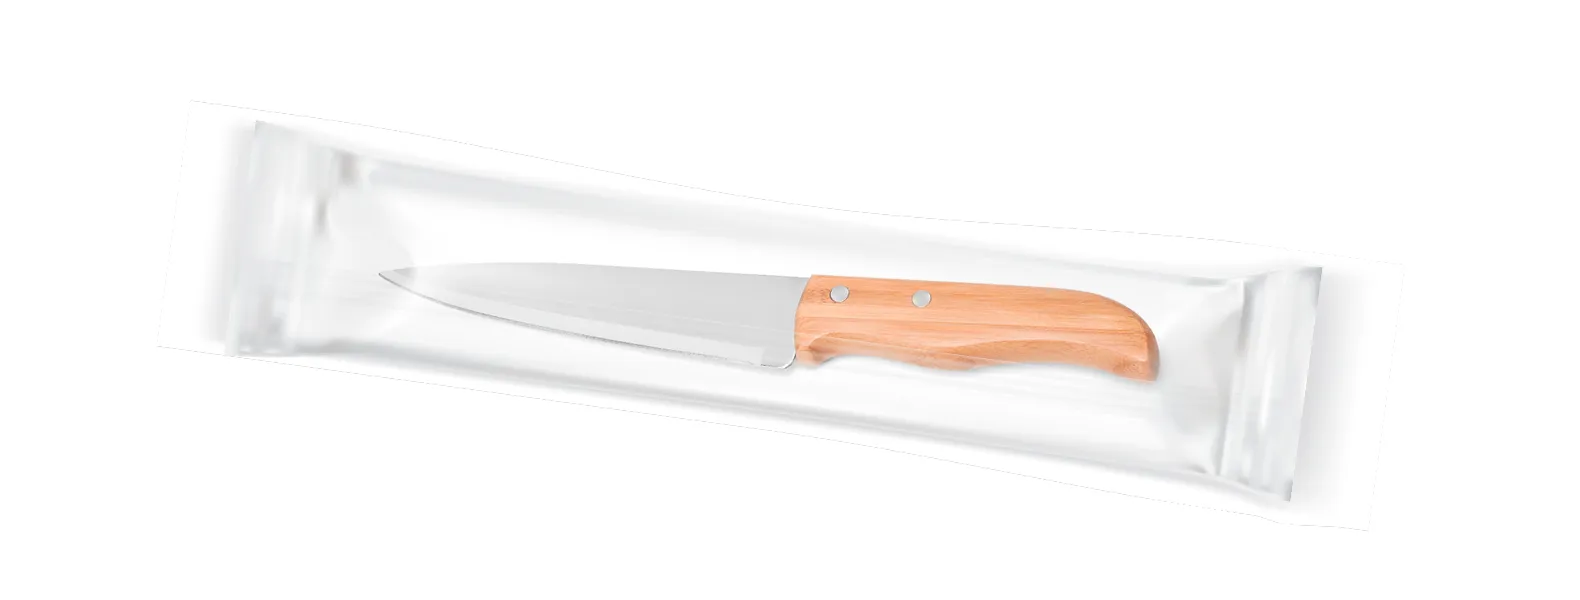 Faca 7'' em Bambu/Inox. Como cortesia, fazemos uma gravação na lâmina da faca com os cortes do boi.